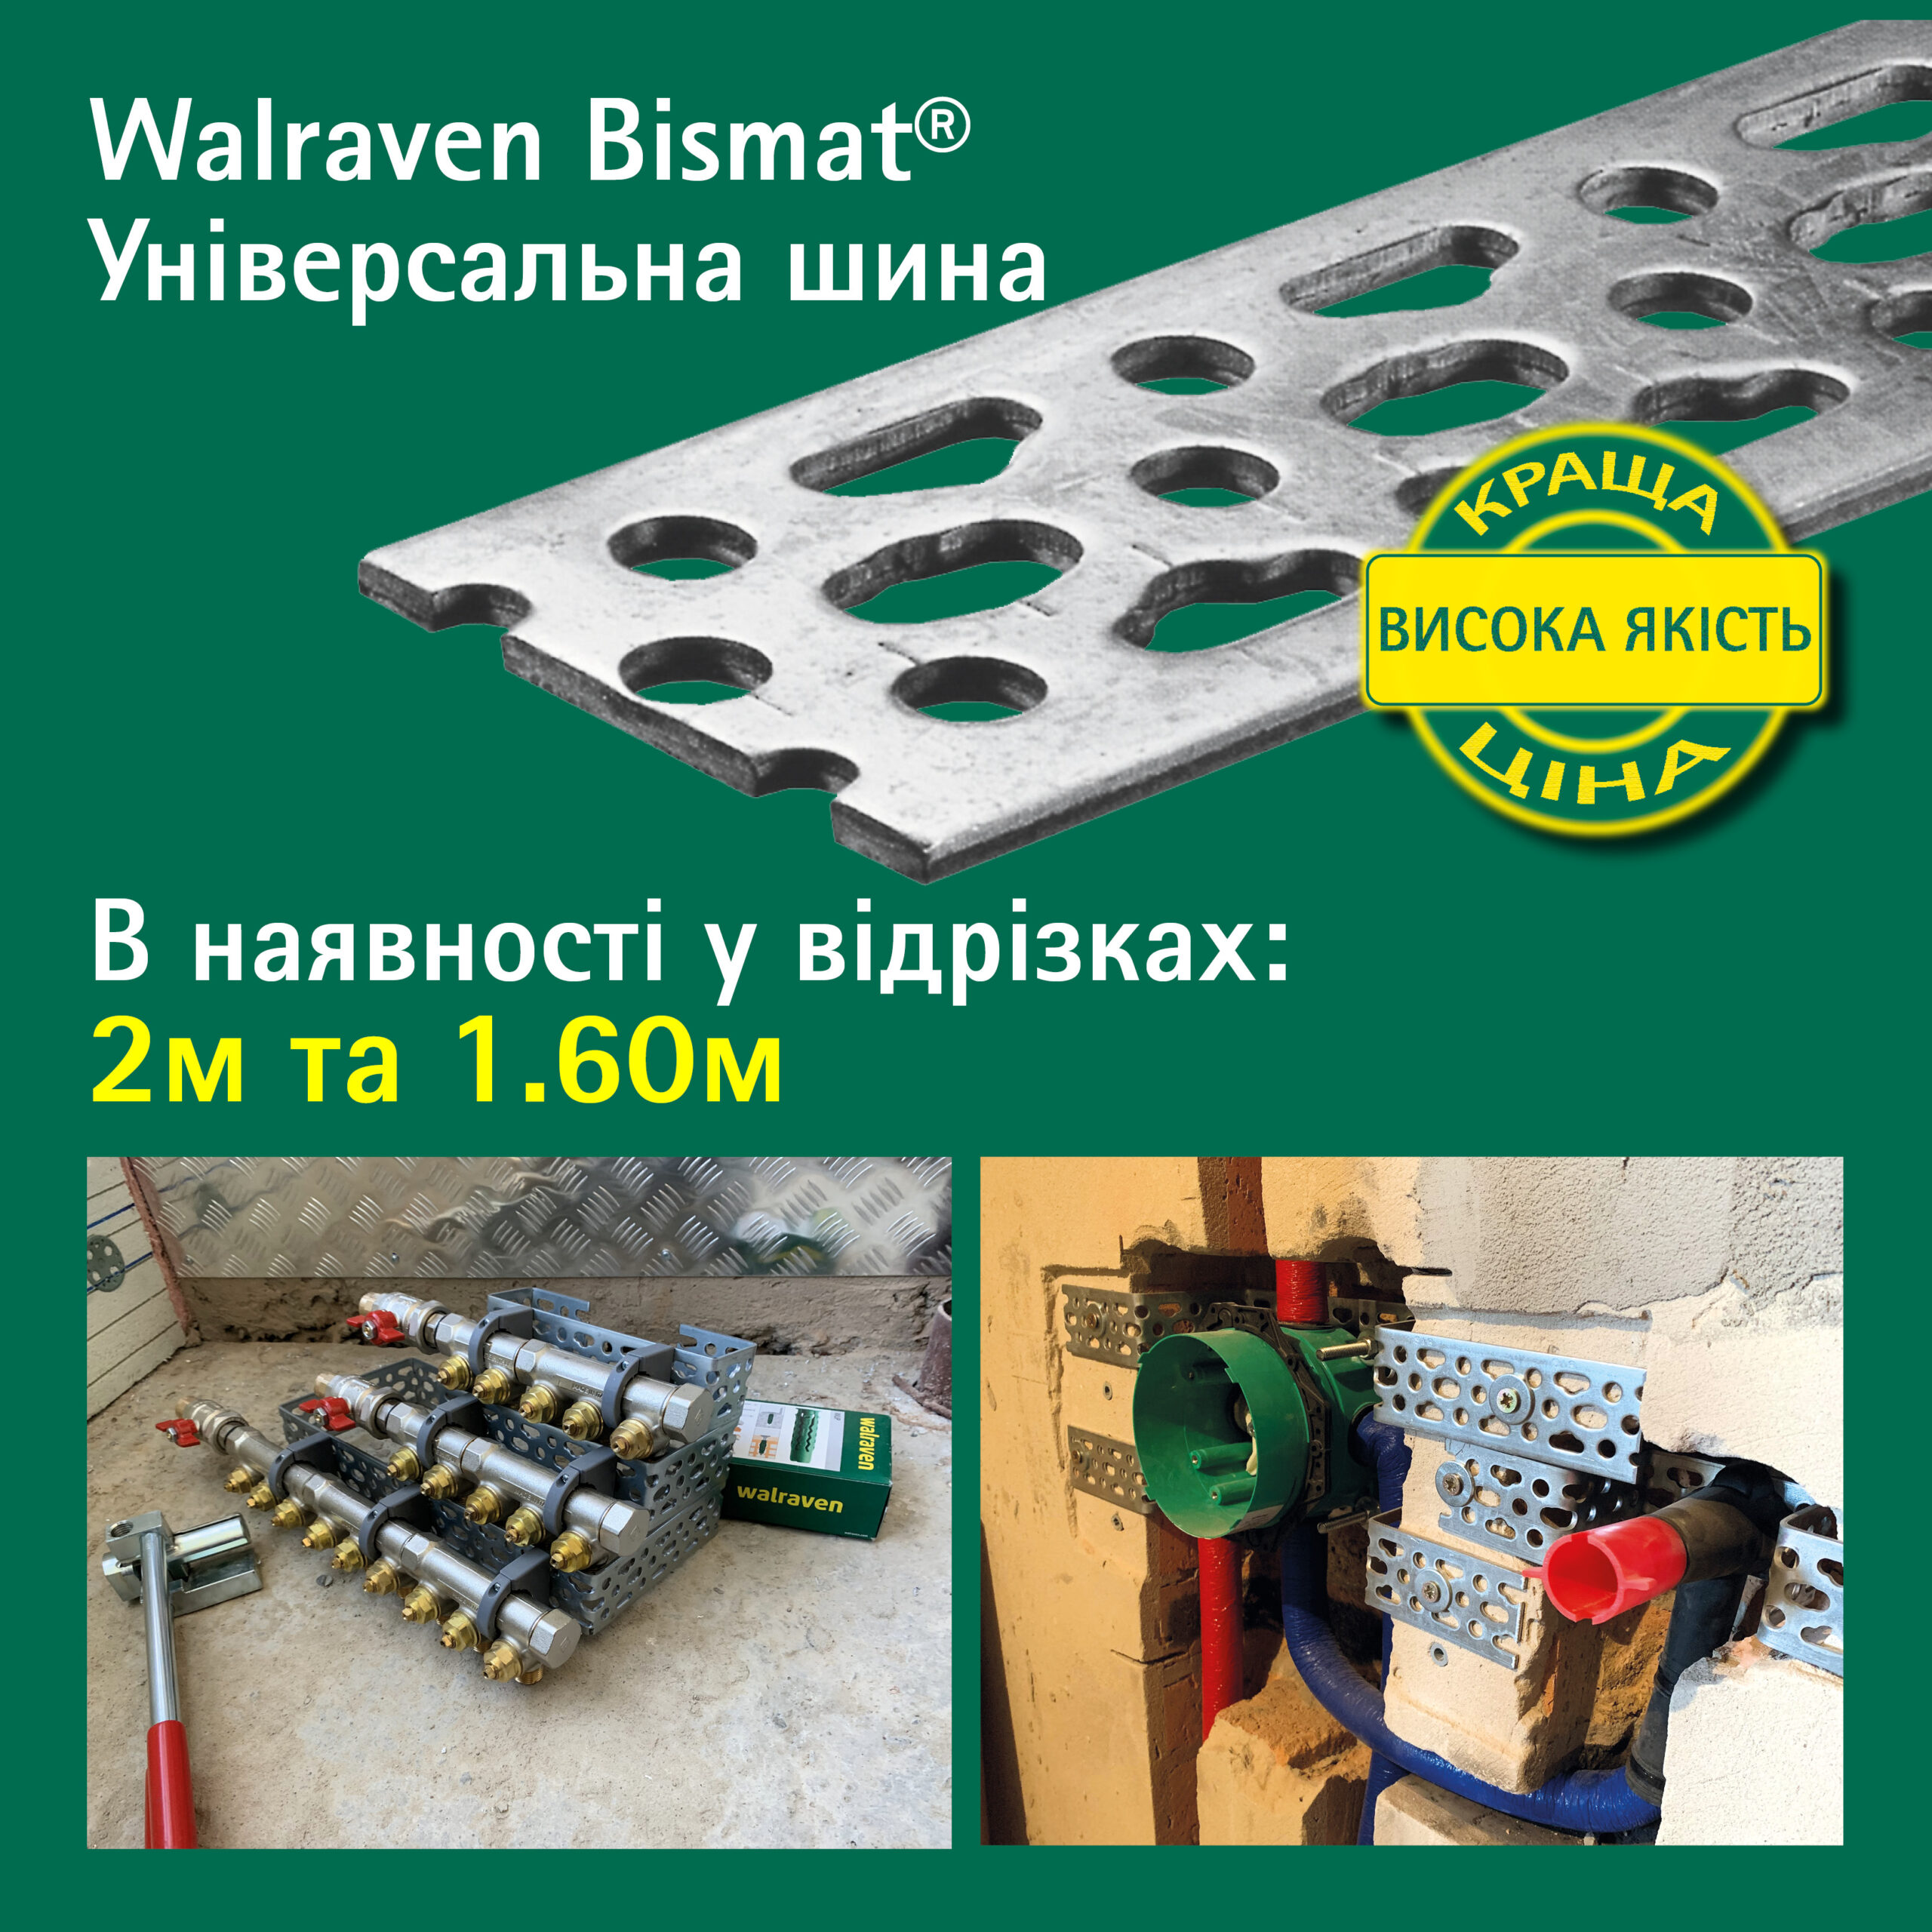 Ще краща ціна на продукти монтажної системи Walraven BISMAT®